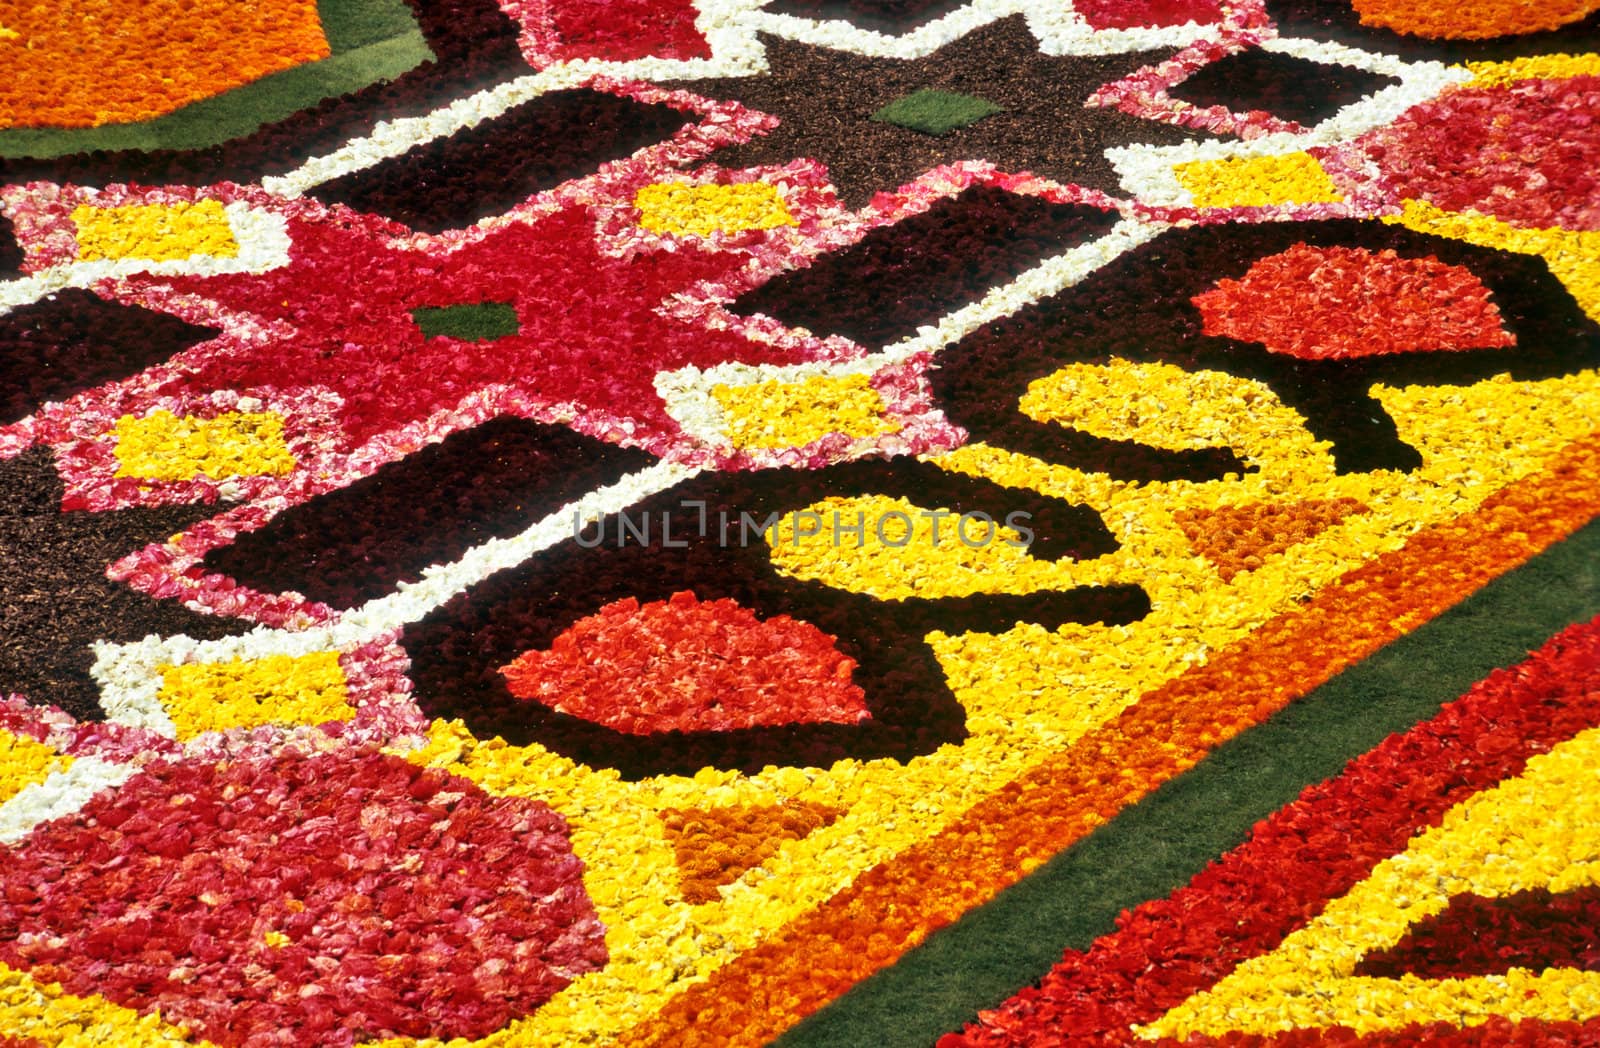 Flower carpet detail by ACMPhoto